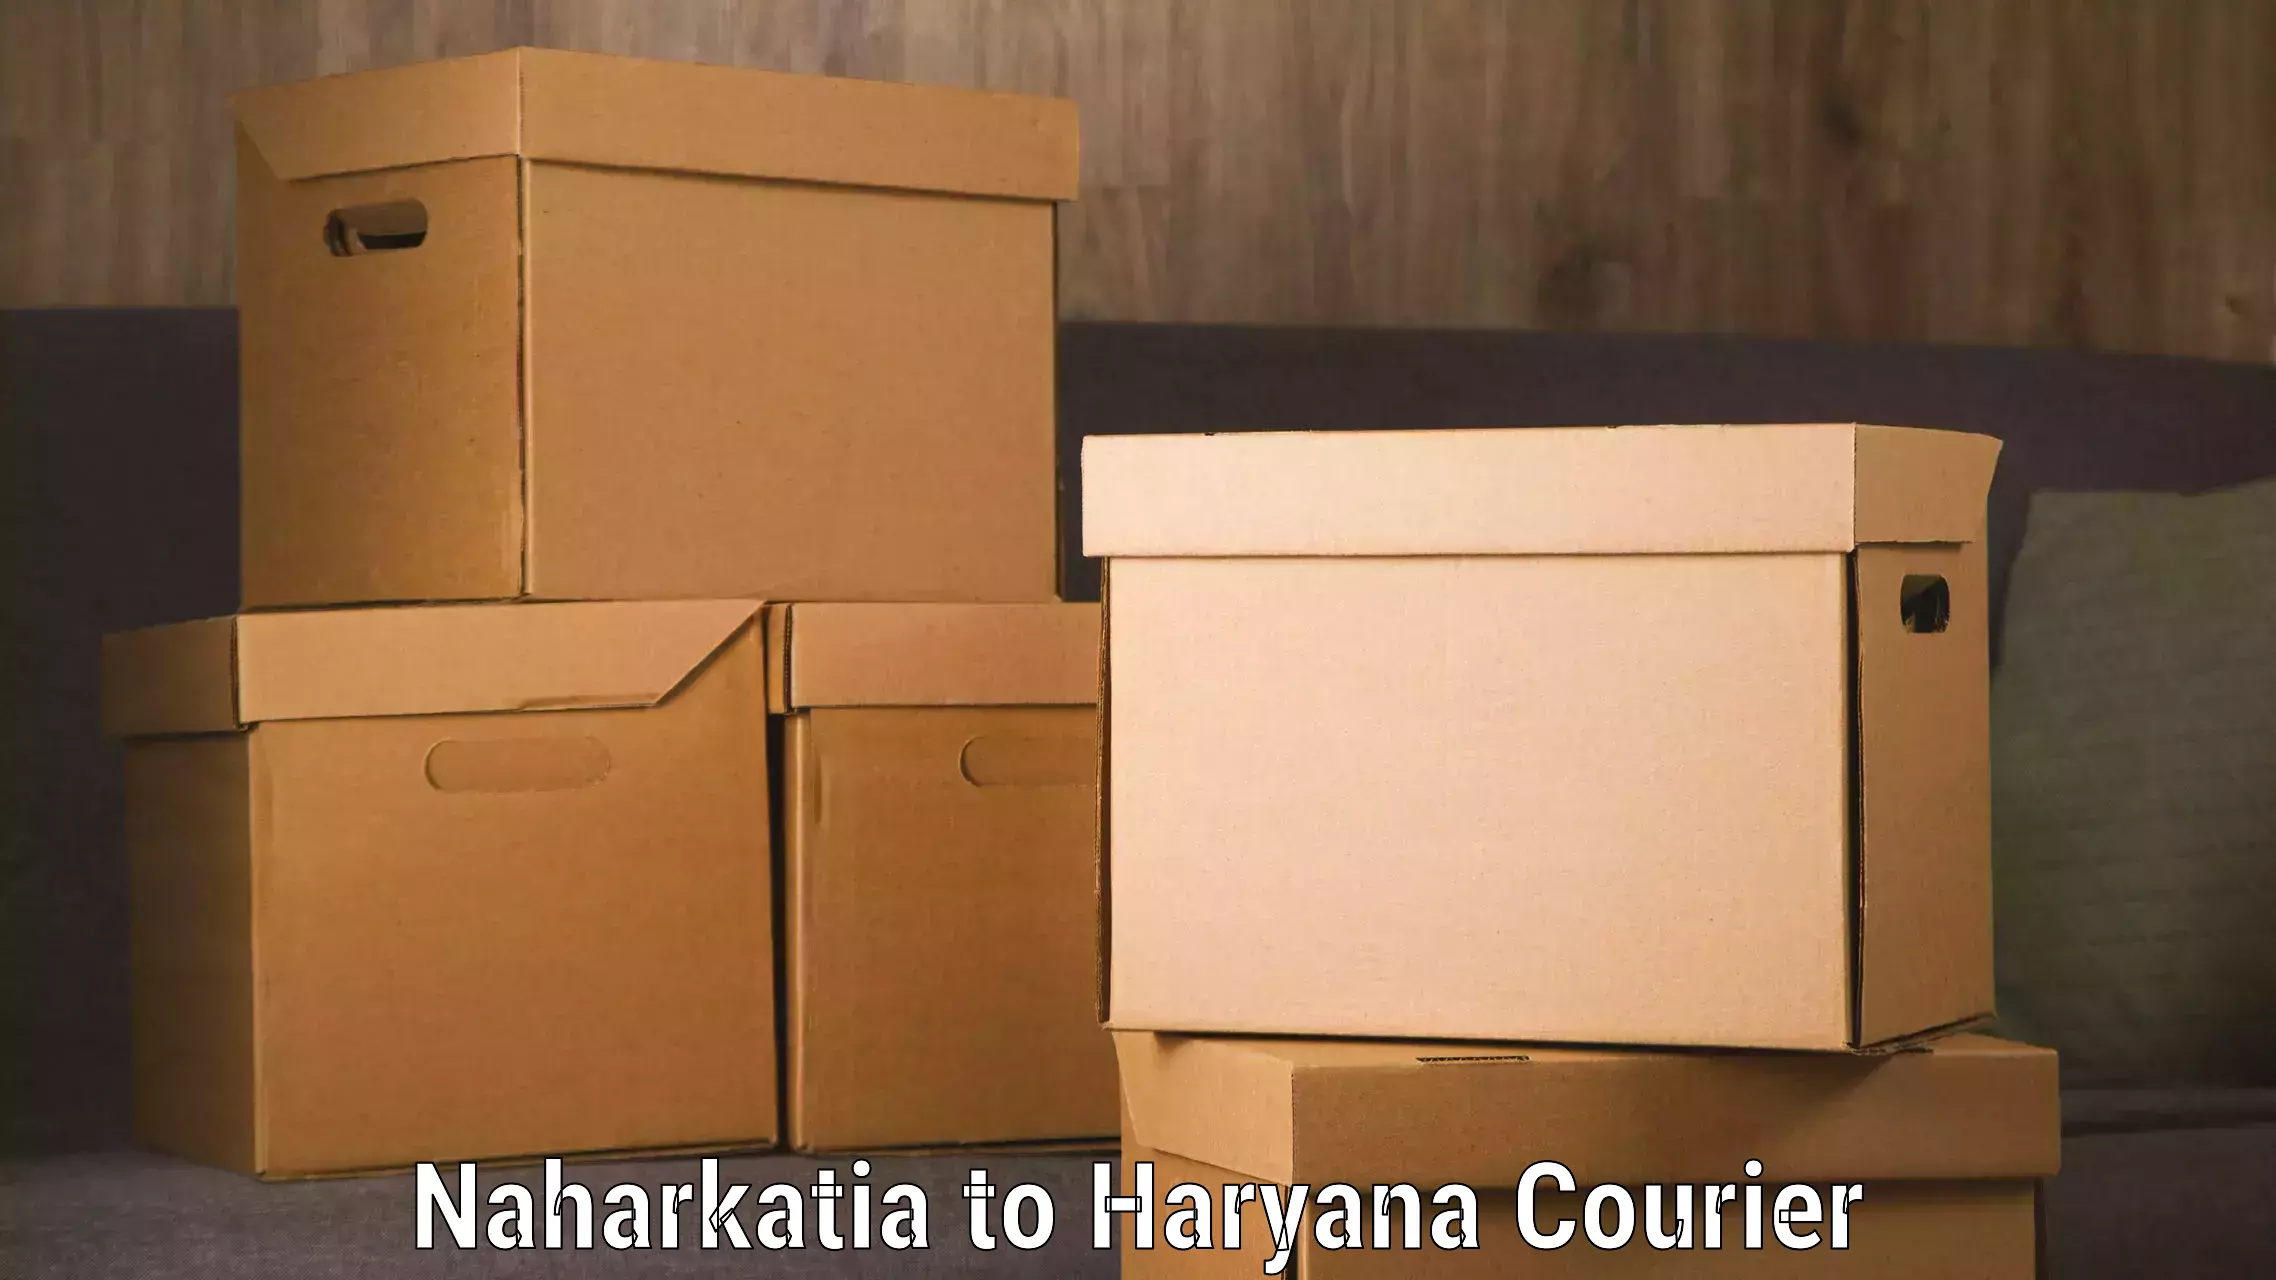 Baggage relocation service Naharkatia to Chaudhary Charan Singh Haryana Agricultural University Hisar